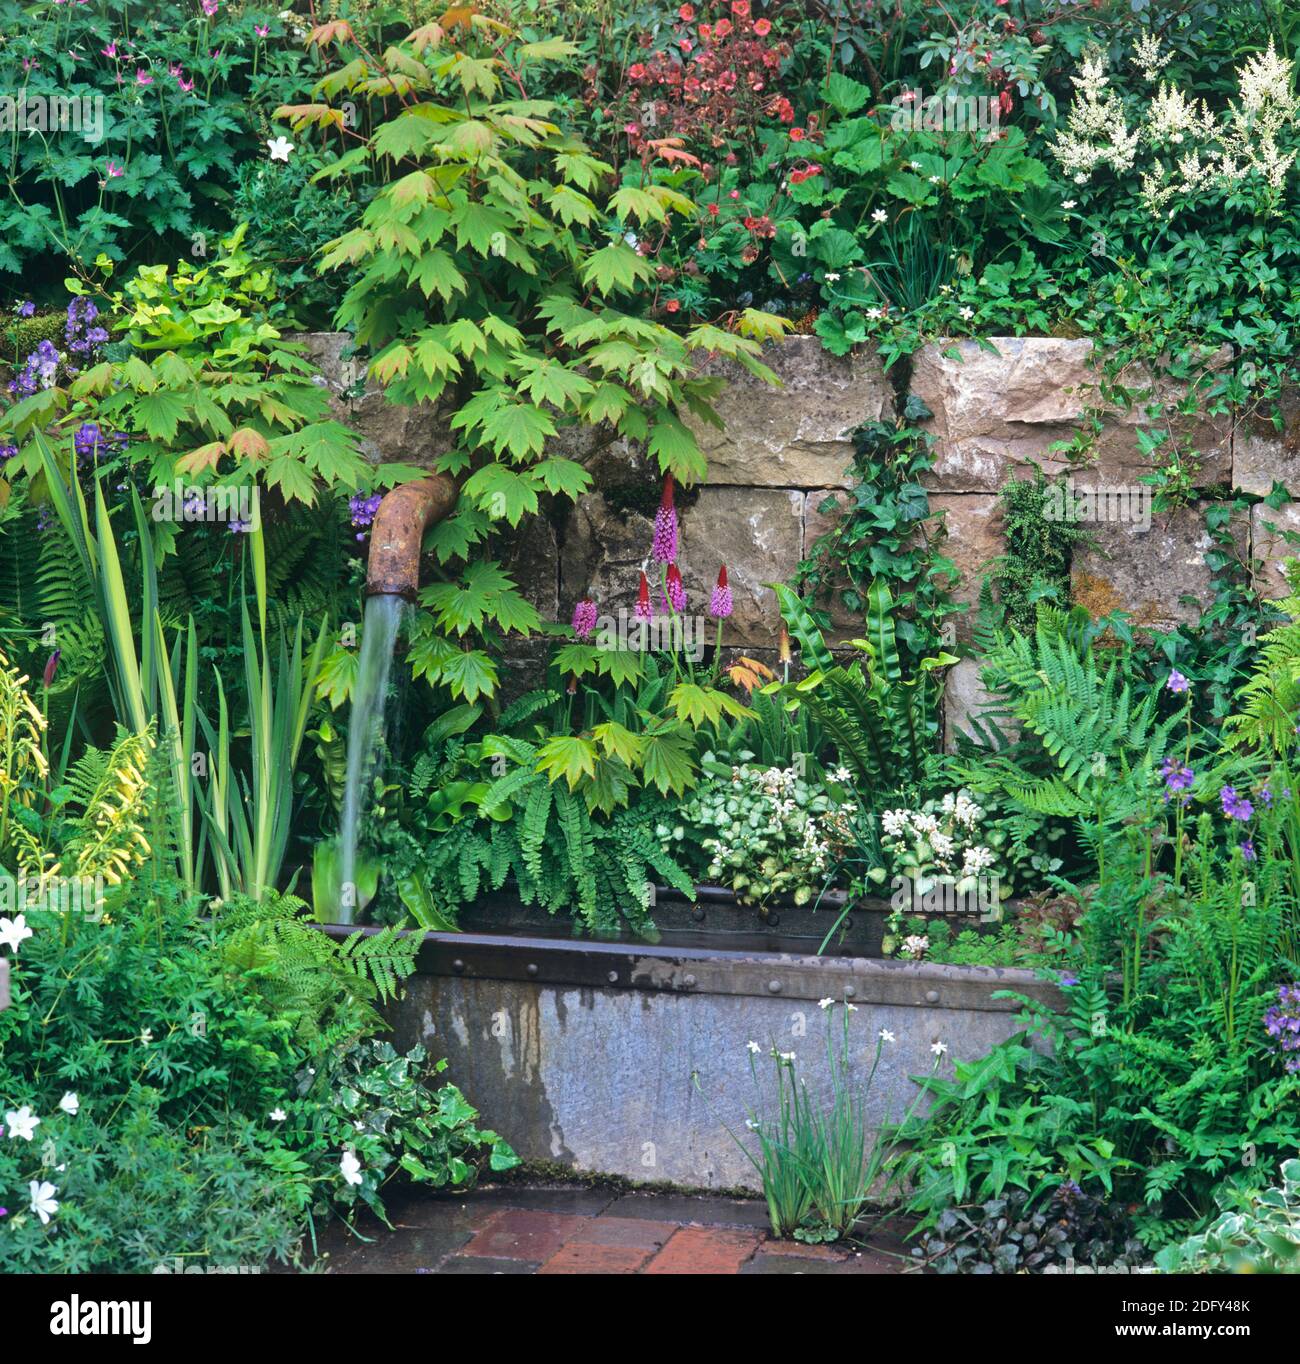 Detalle de un jardín con una fuente de agua decorativa Foto de stock